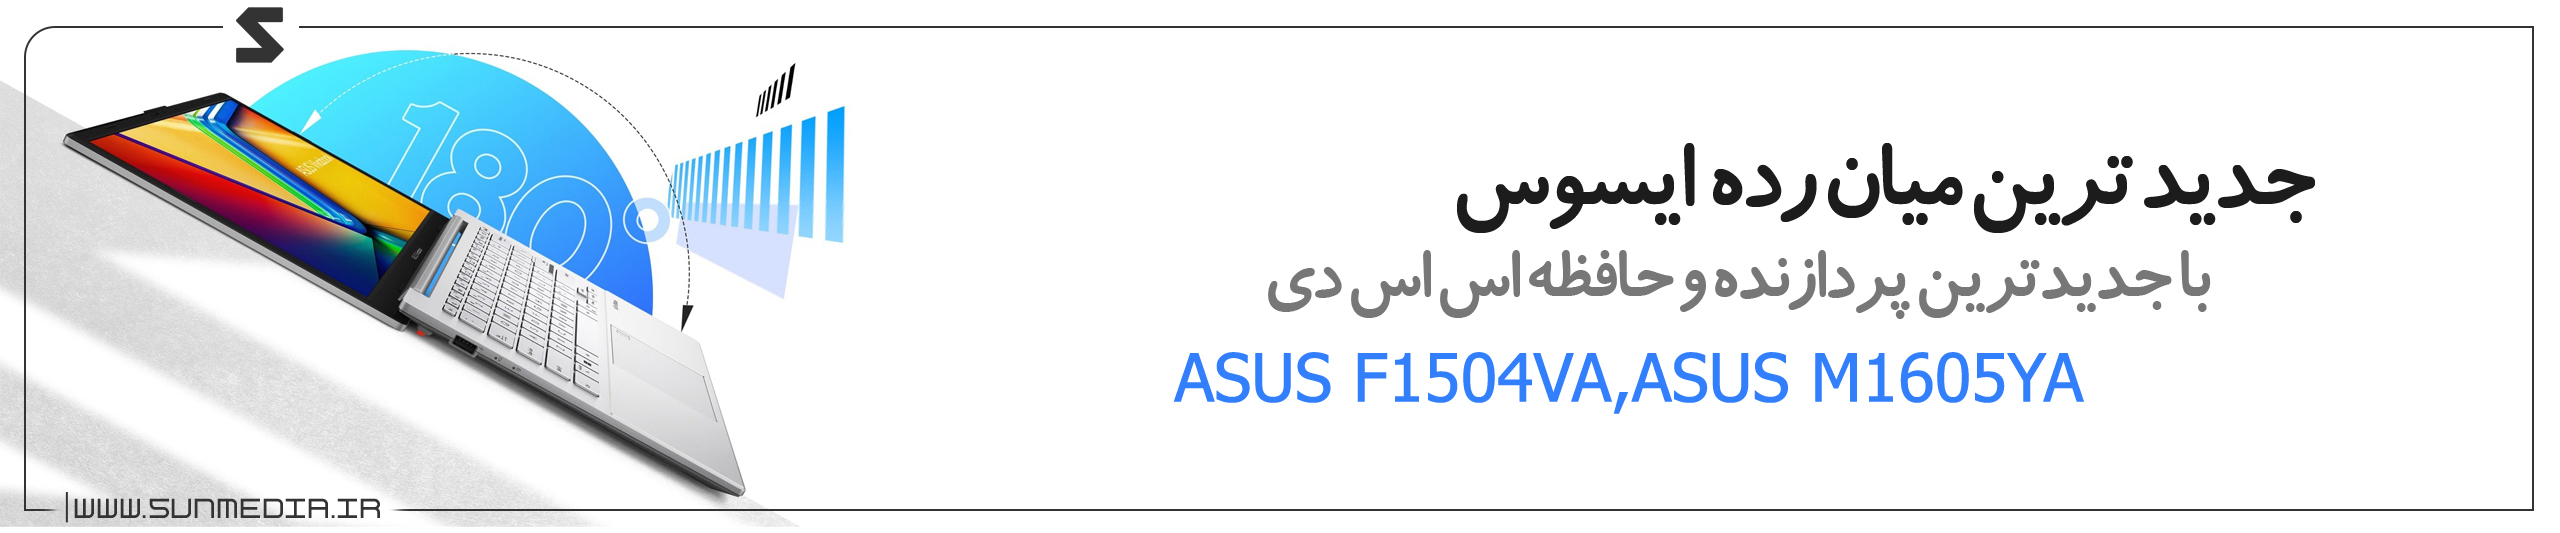 ASUS F1504VA